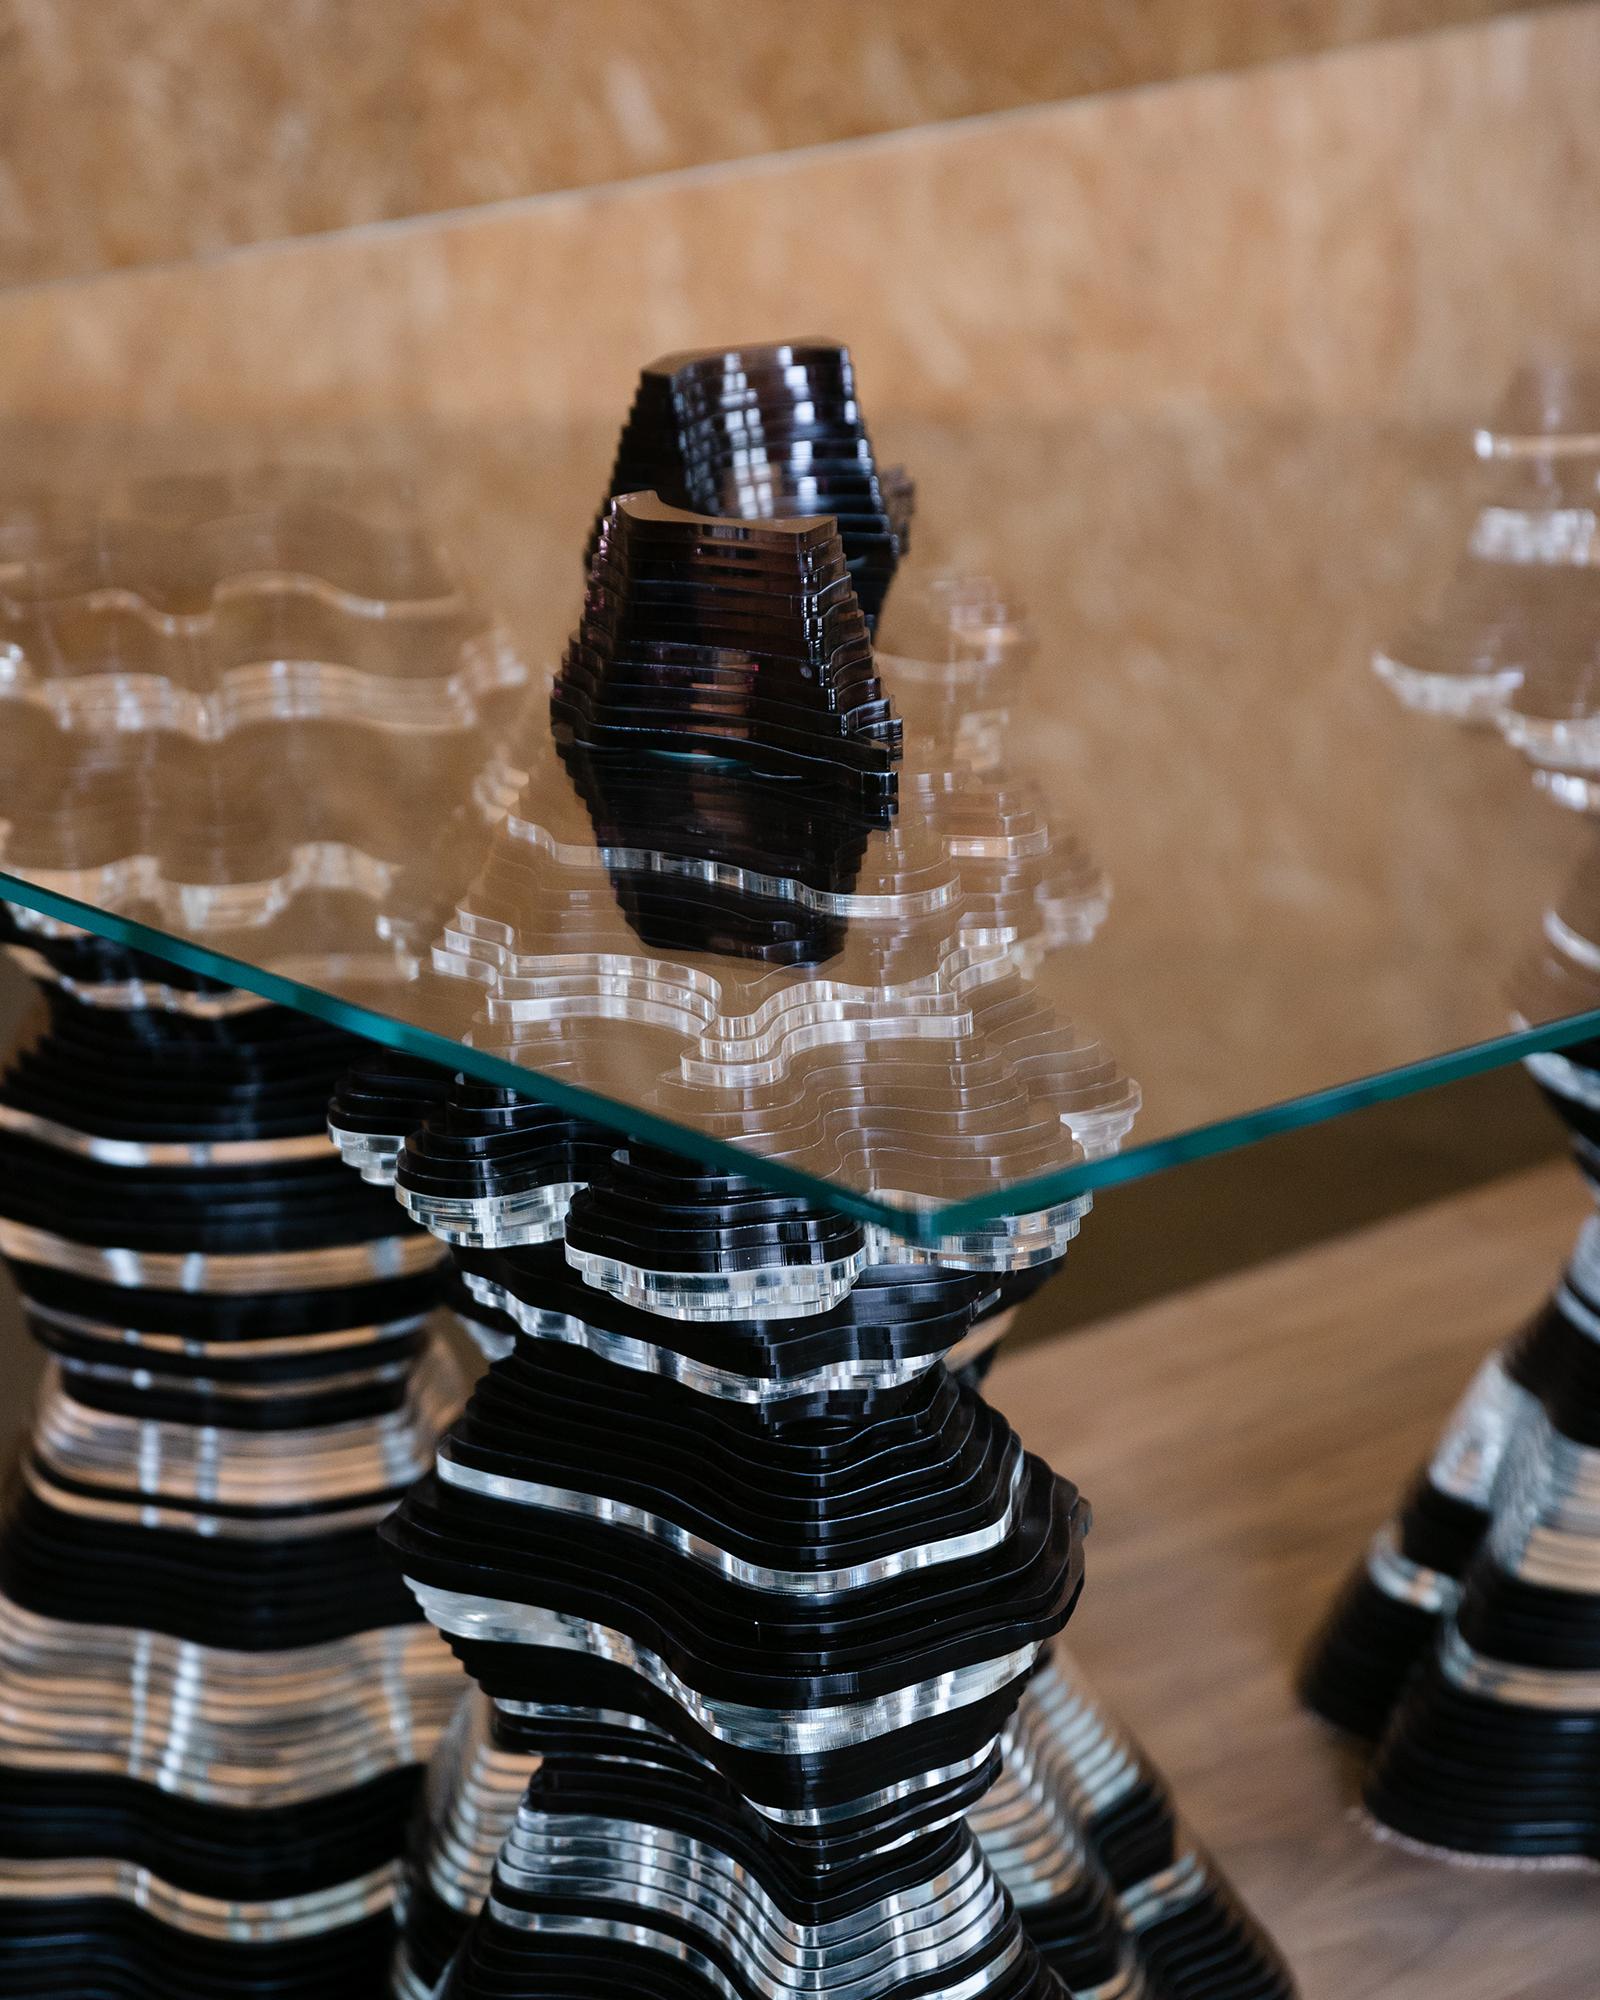 Ein neues, beeindruckendes skulpturales Werk von Christopher Duffy, das von der Nature inspiriert ist und die Formen von hoch aufragenden Stalagmiten aufweist, die das Glas durchbrechen.

Der aus gehärtetem Glas gefertigte und auf 75 cm